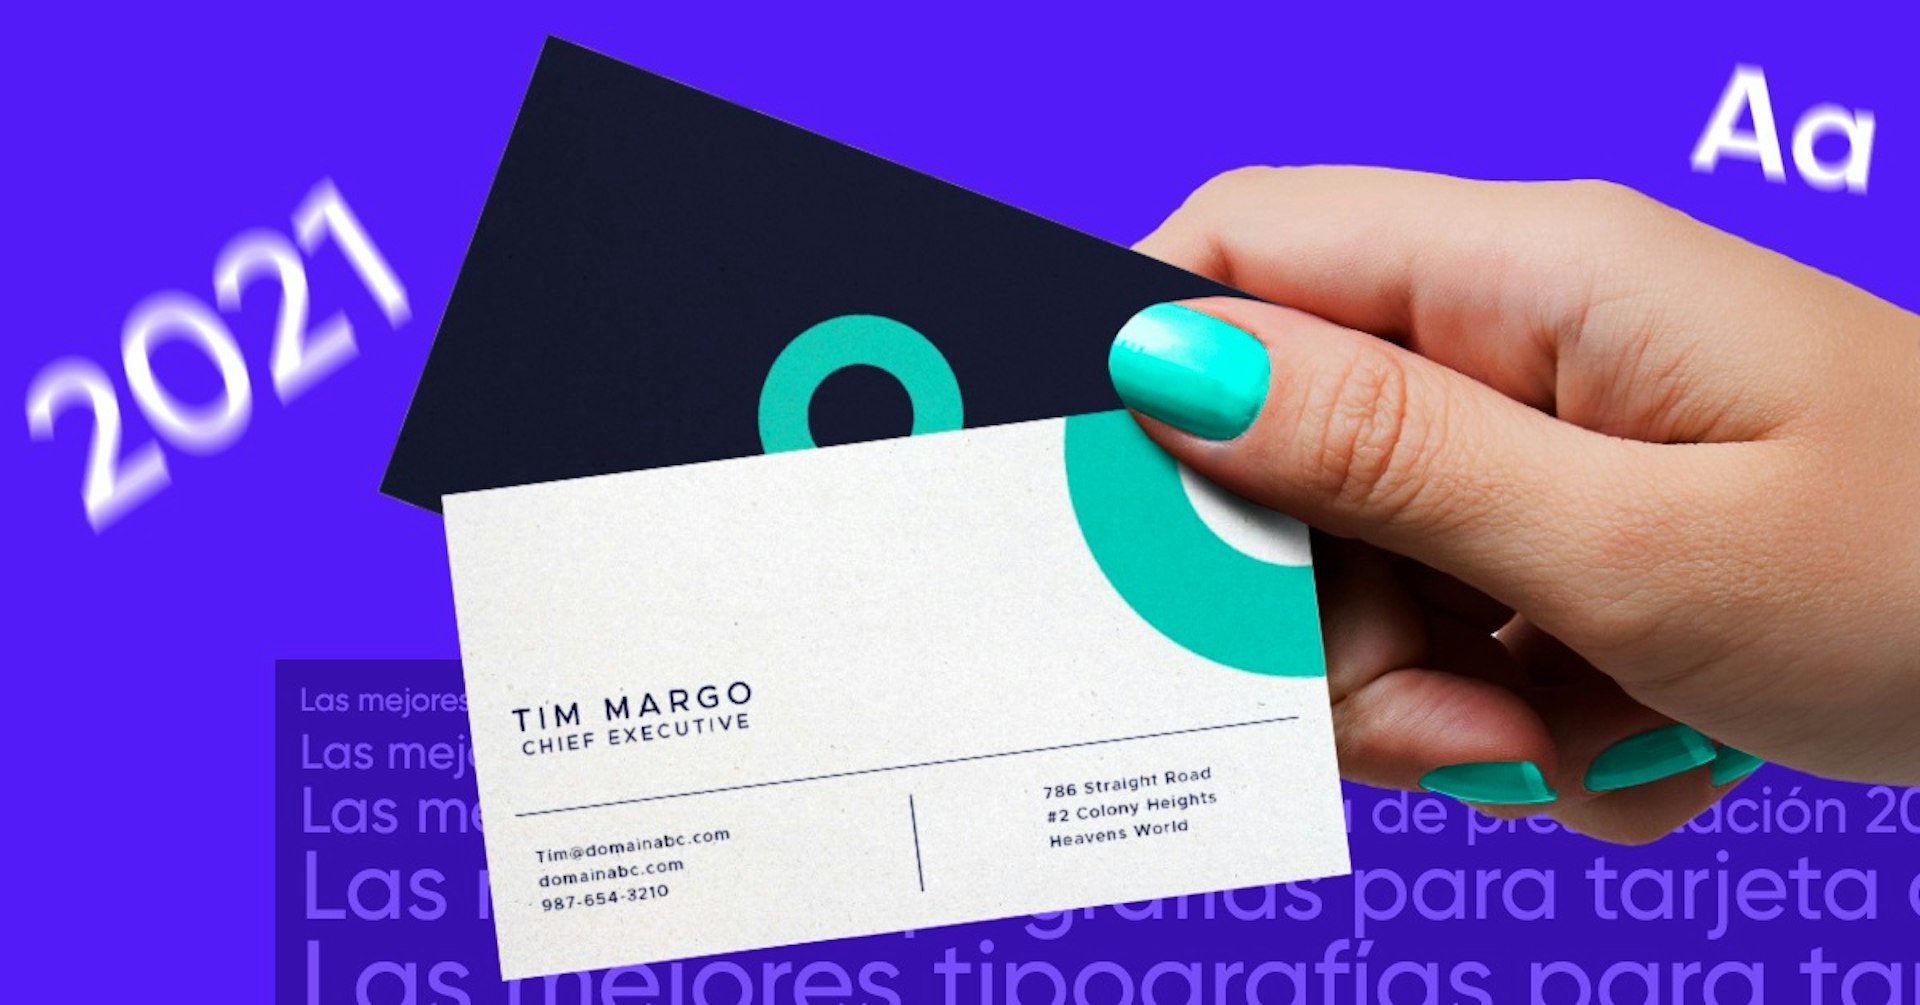 Tipografías para tarjetas de presentación ¡Causa la mejor impresión!